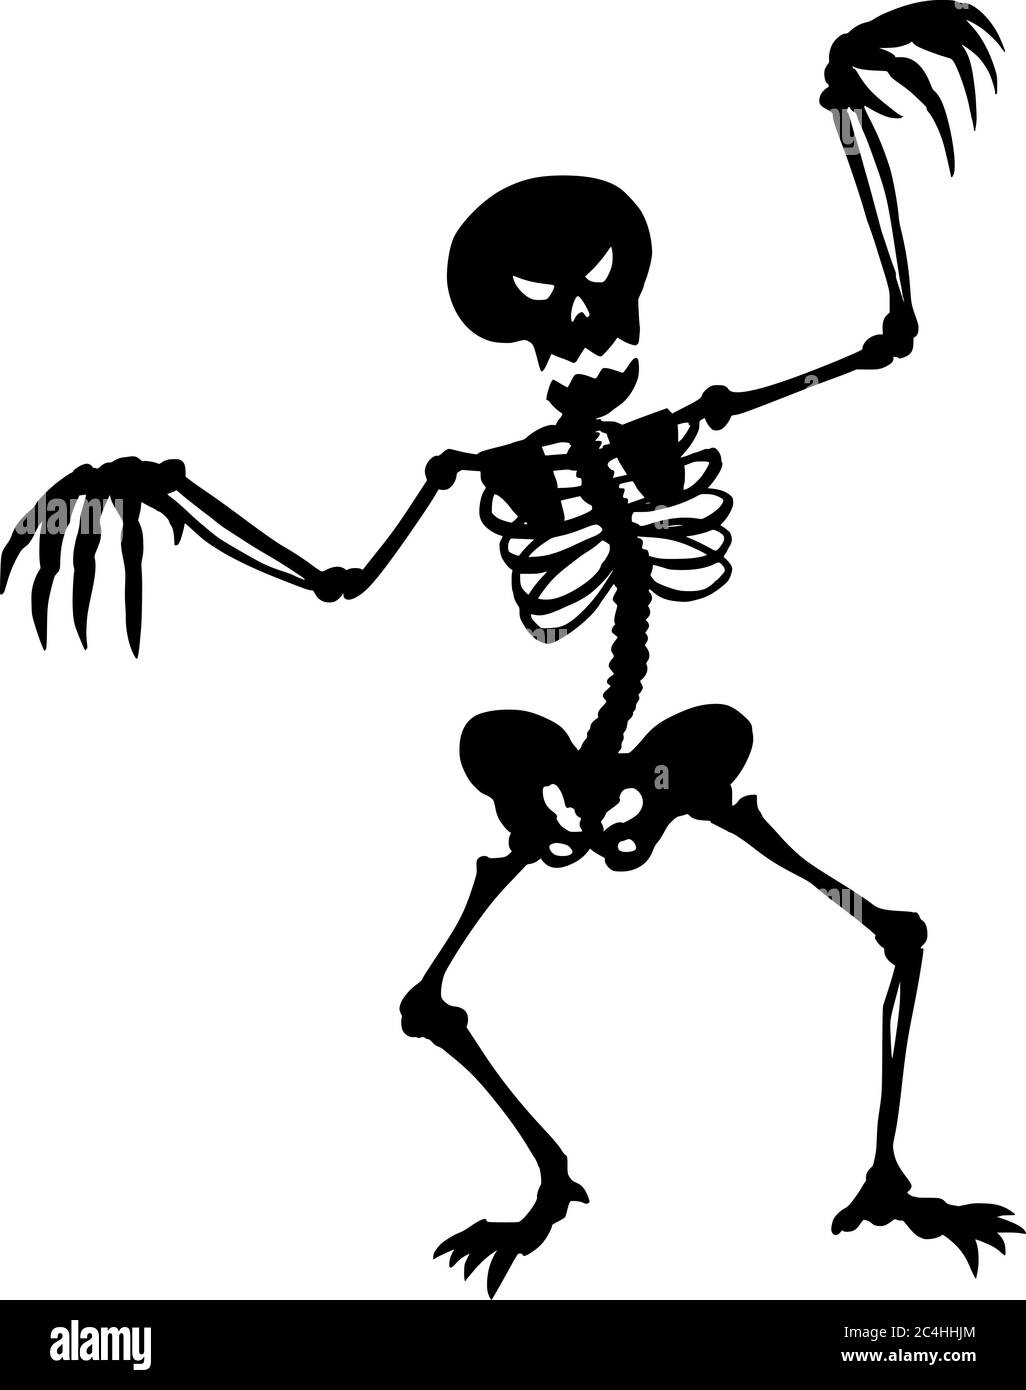 Illustration vectorielle de la silhouette noire d'un squelette d'Halloween effrayant ou créepy sur fond blanc. Illustration de Vecteur